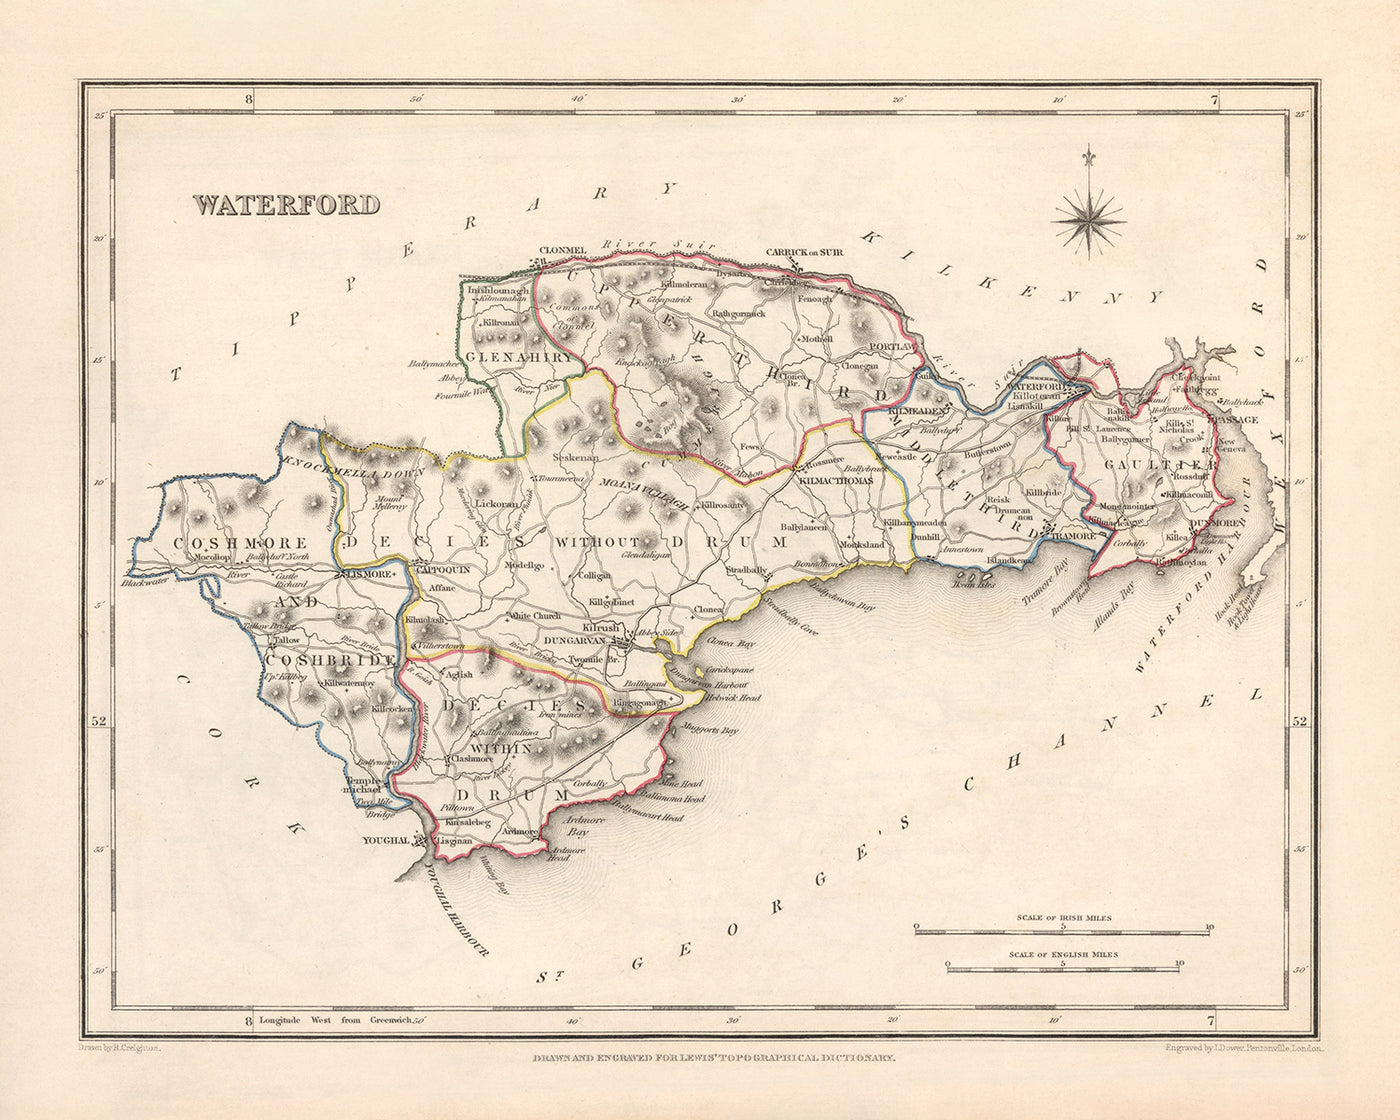 Alte Karte der Grafschaft Waterford von Samuel Lewis, 1844: Dungarvan, Lismore, Cappoquin, Tramore, Dunmore East